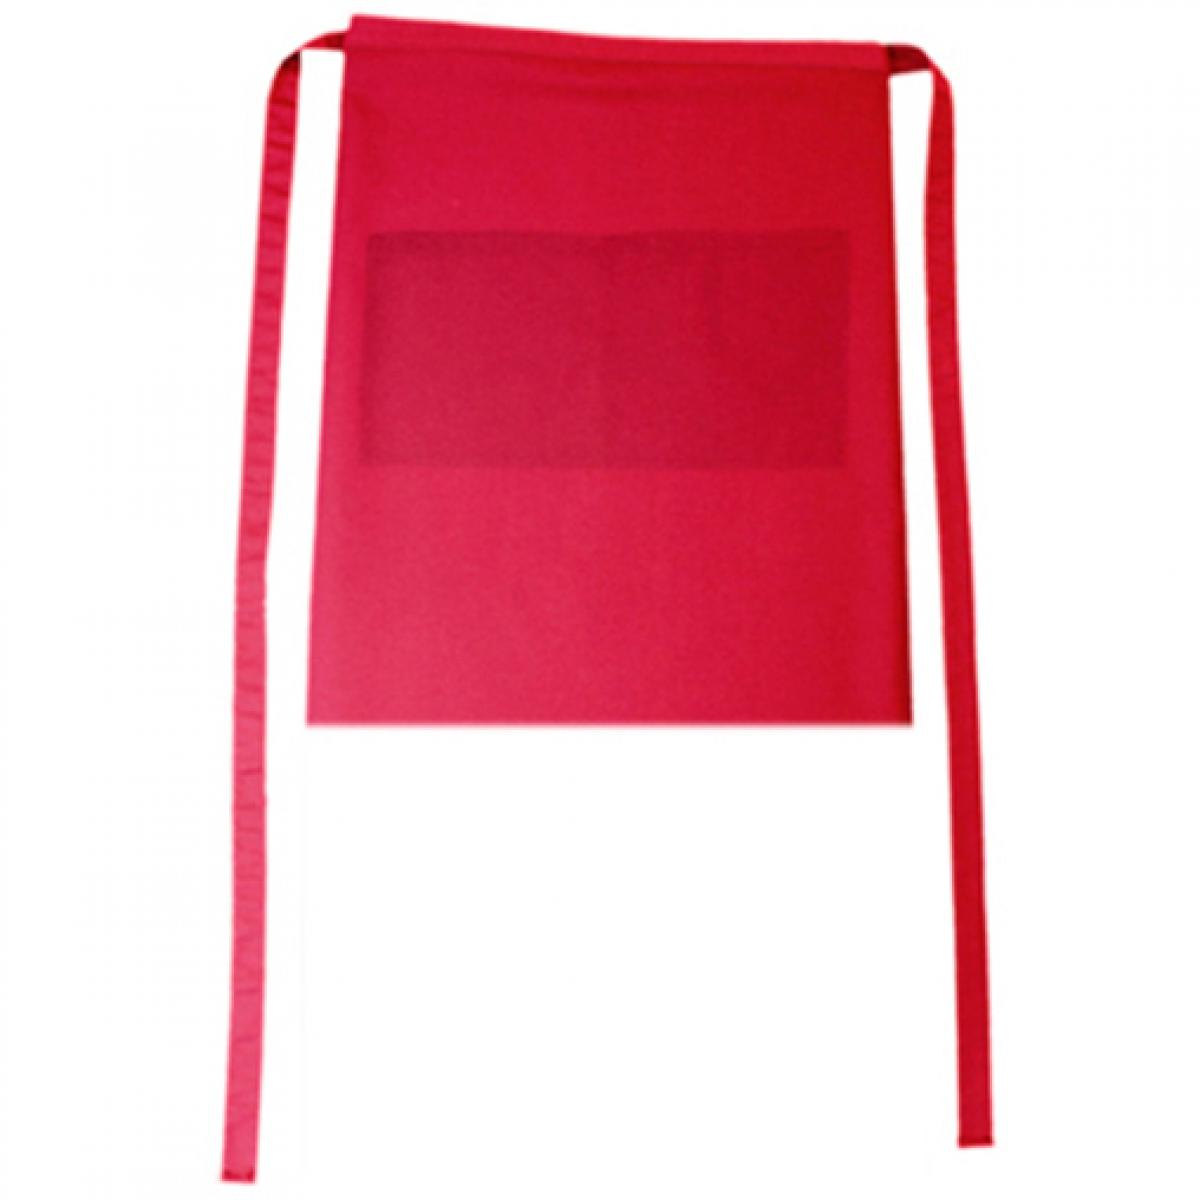 Hersteller: CG Workwear Herstellernummer: 01262-01 Artikelbezeichnung: Bistroschürze Roma Bag 50 x 78 cm Farbe: Regency Red